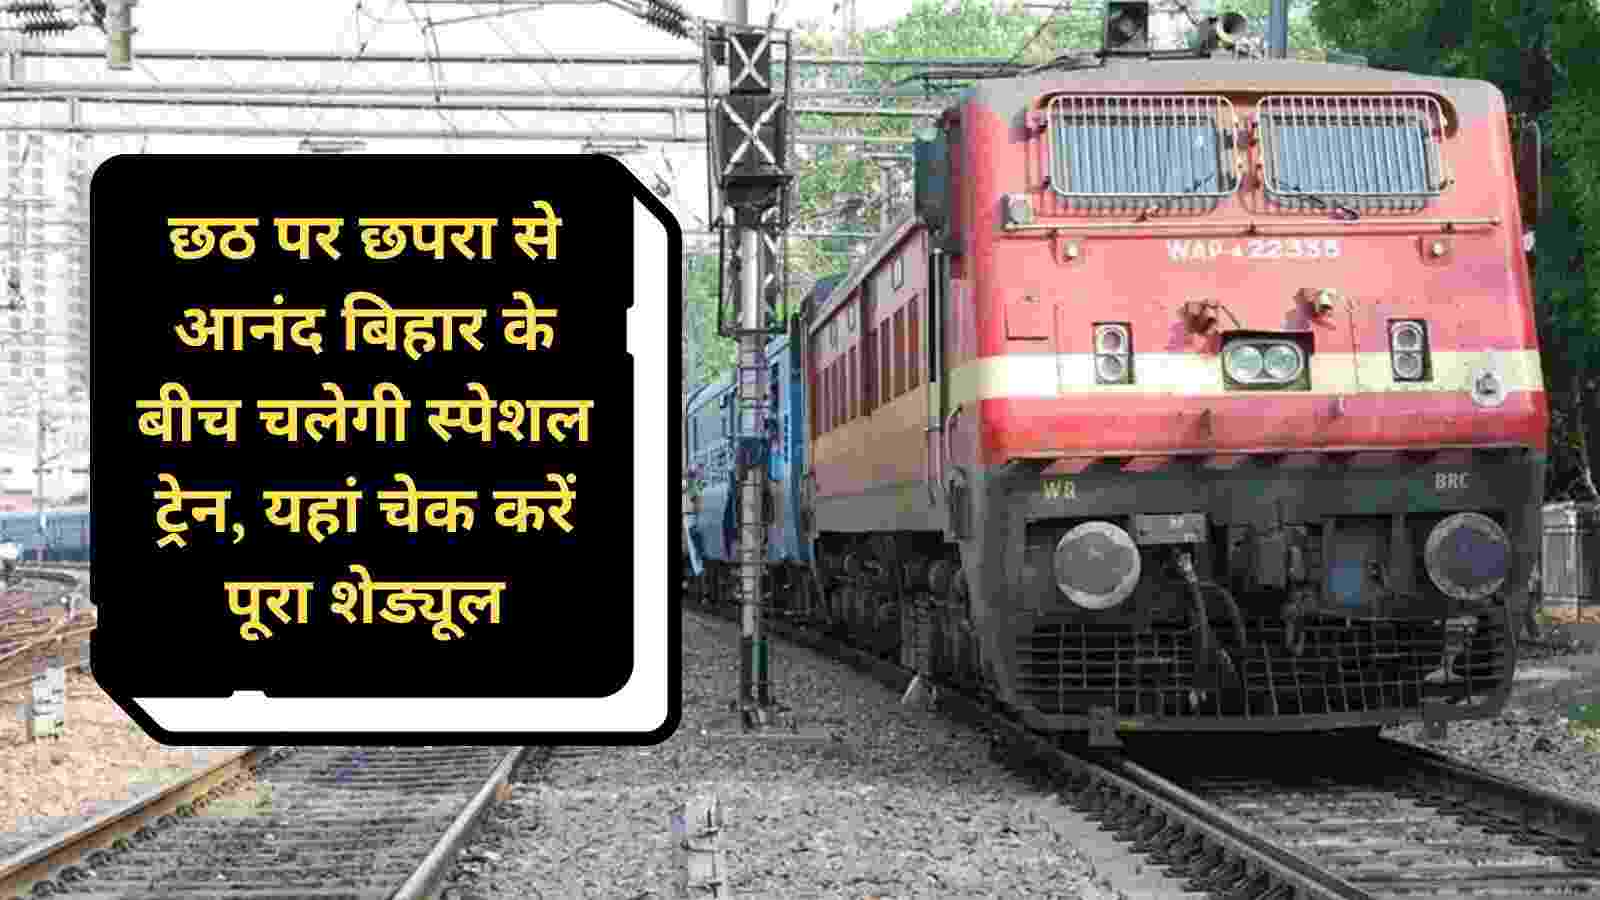 Chhath Special Train: छठ पर छपरा से आनंद बिहार के बीच चलेगी स्पेशल ट्रेन, यहां चेक करें पूरा शेड्यूल